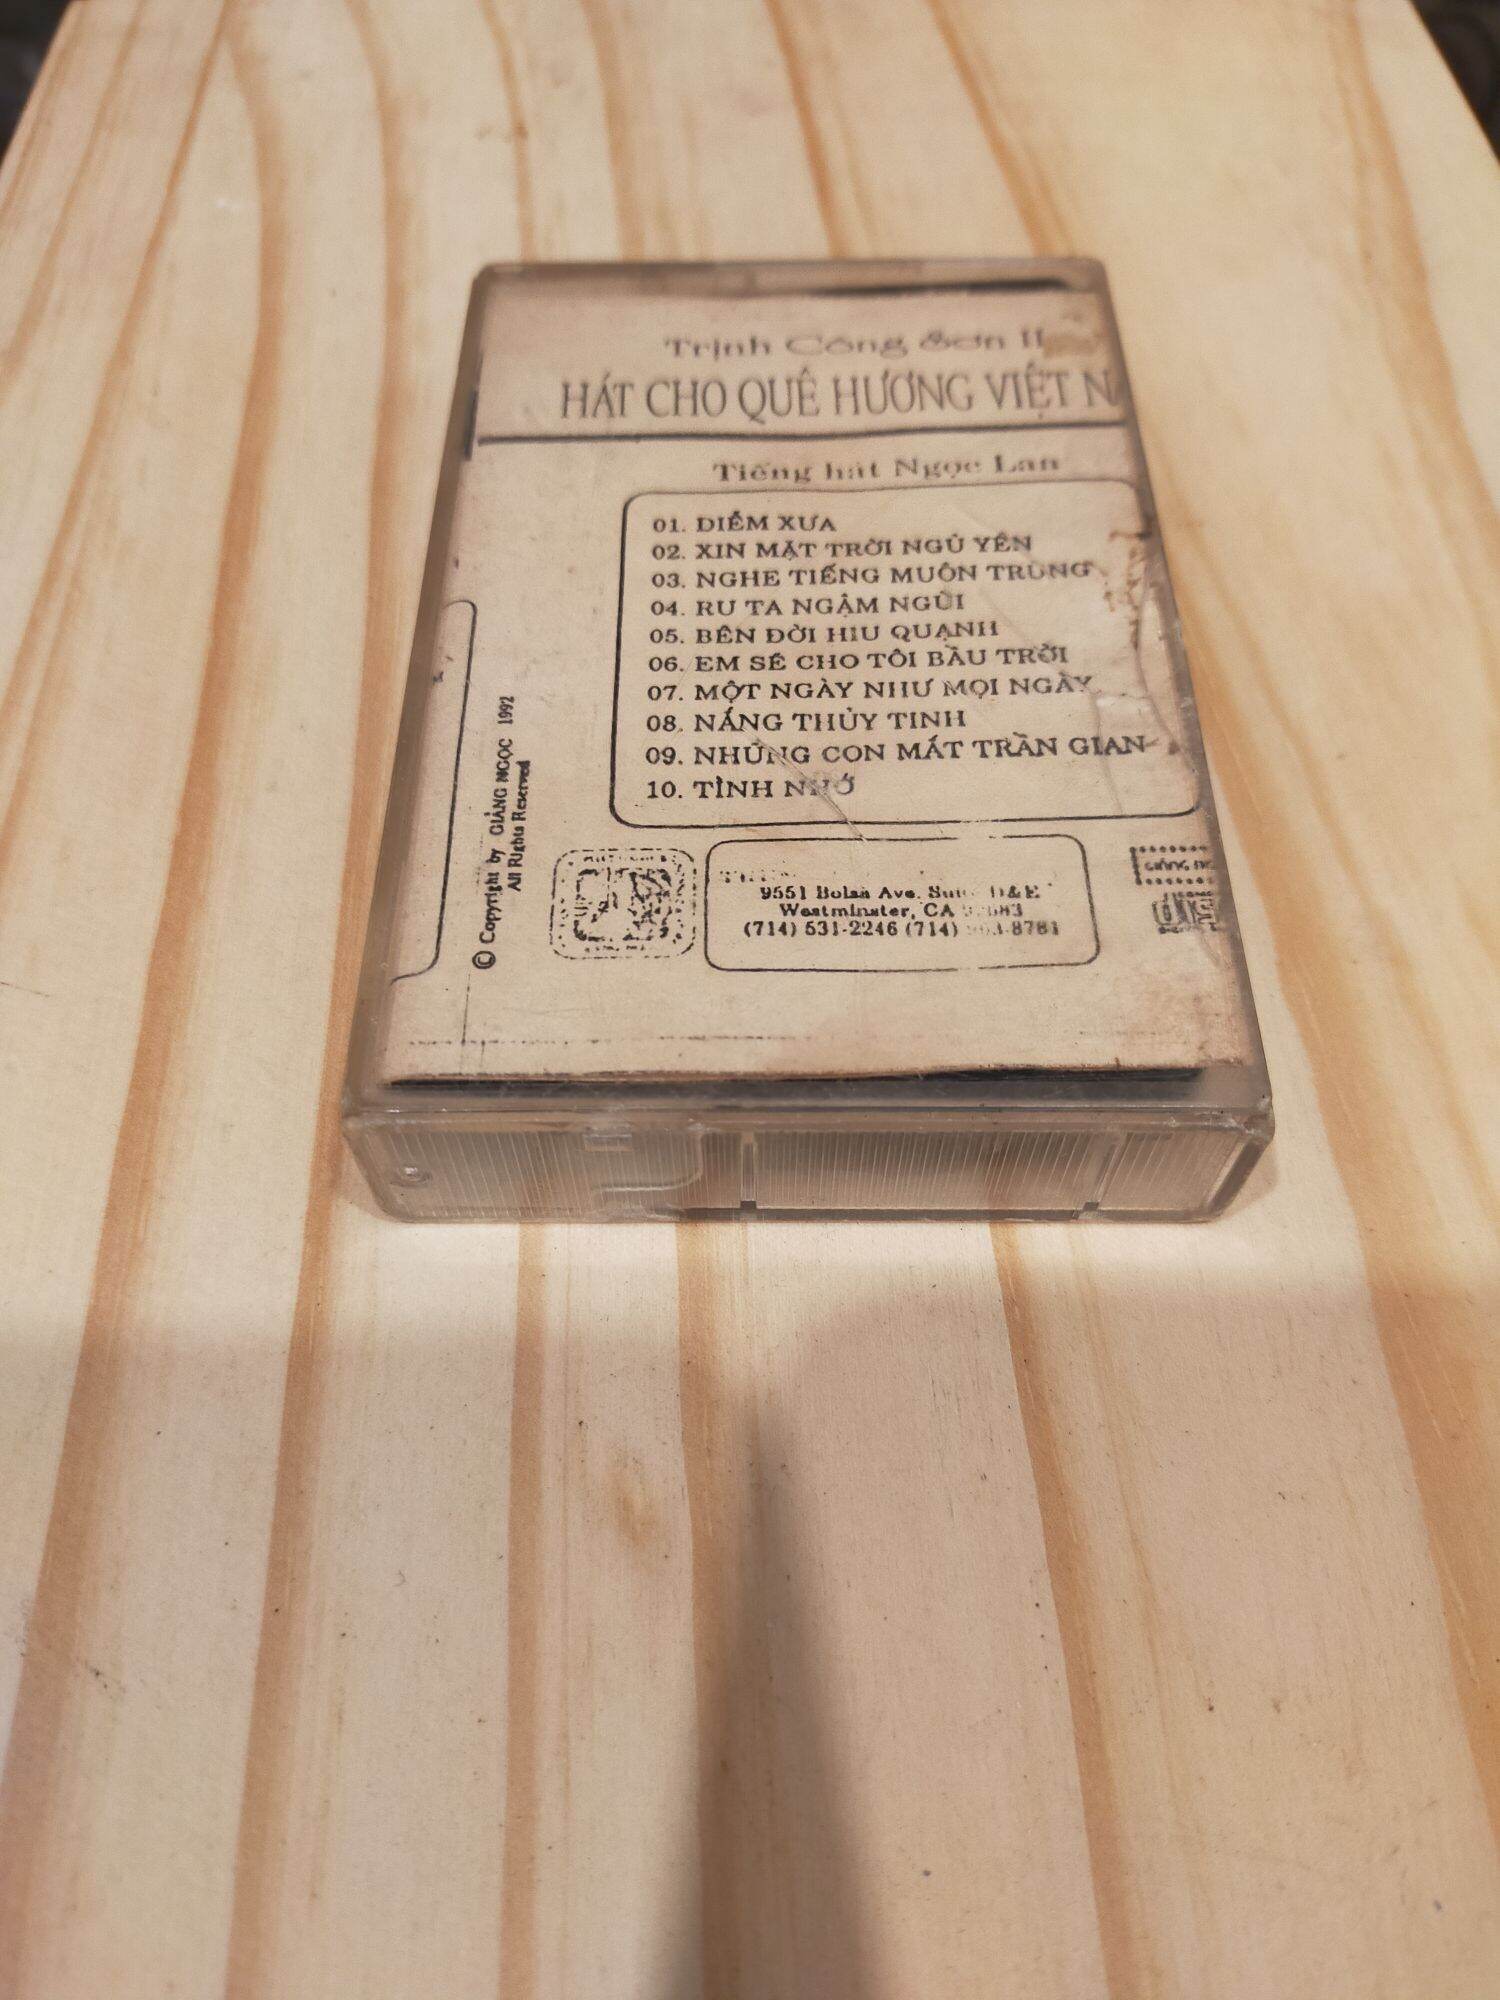 1 băng cassette maxell UD tiếng hát khánh ly nhạc Trịnh( lưu ý: đây là băng cũ